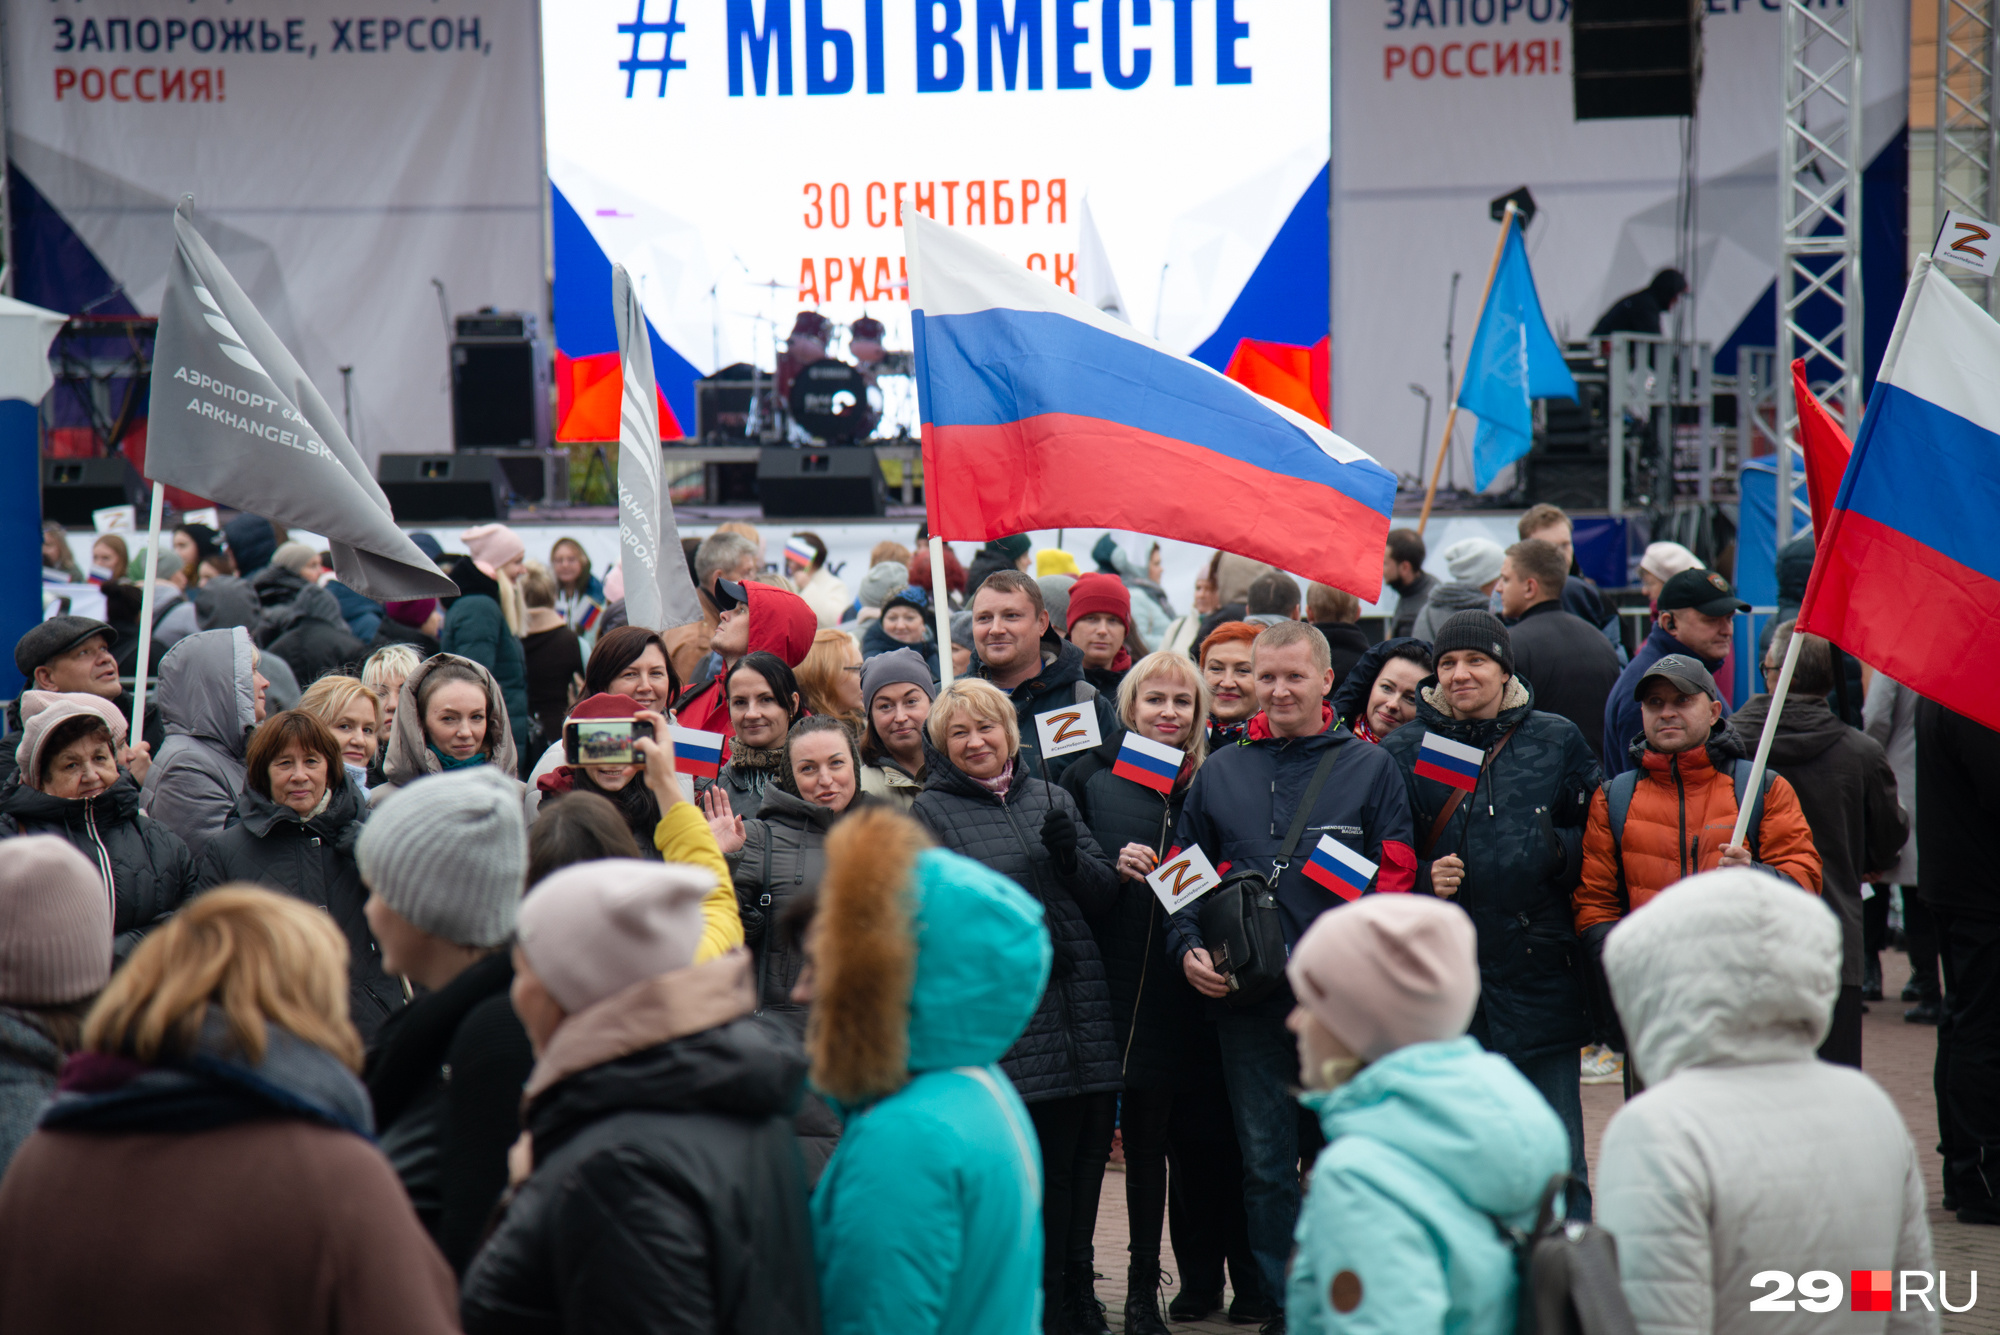 На баннерах на сцене можно прочесть: «Вместе навсегда! Выбор сделан! Донецк, Луганск, Запорожье, Херсон, Россия!» А в руках у людей — флаги